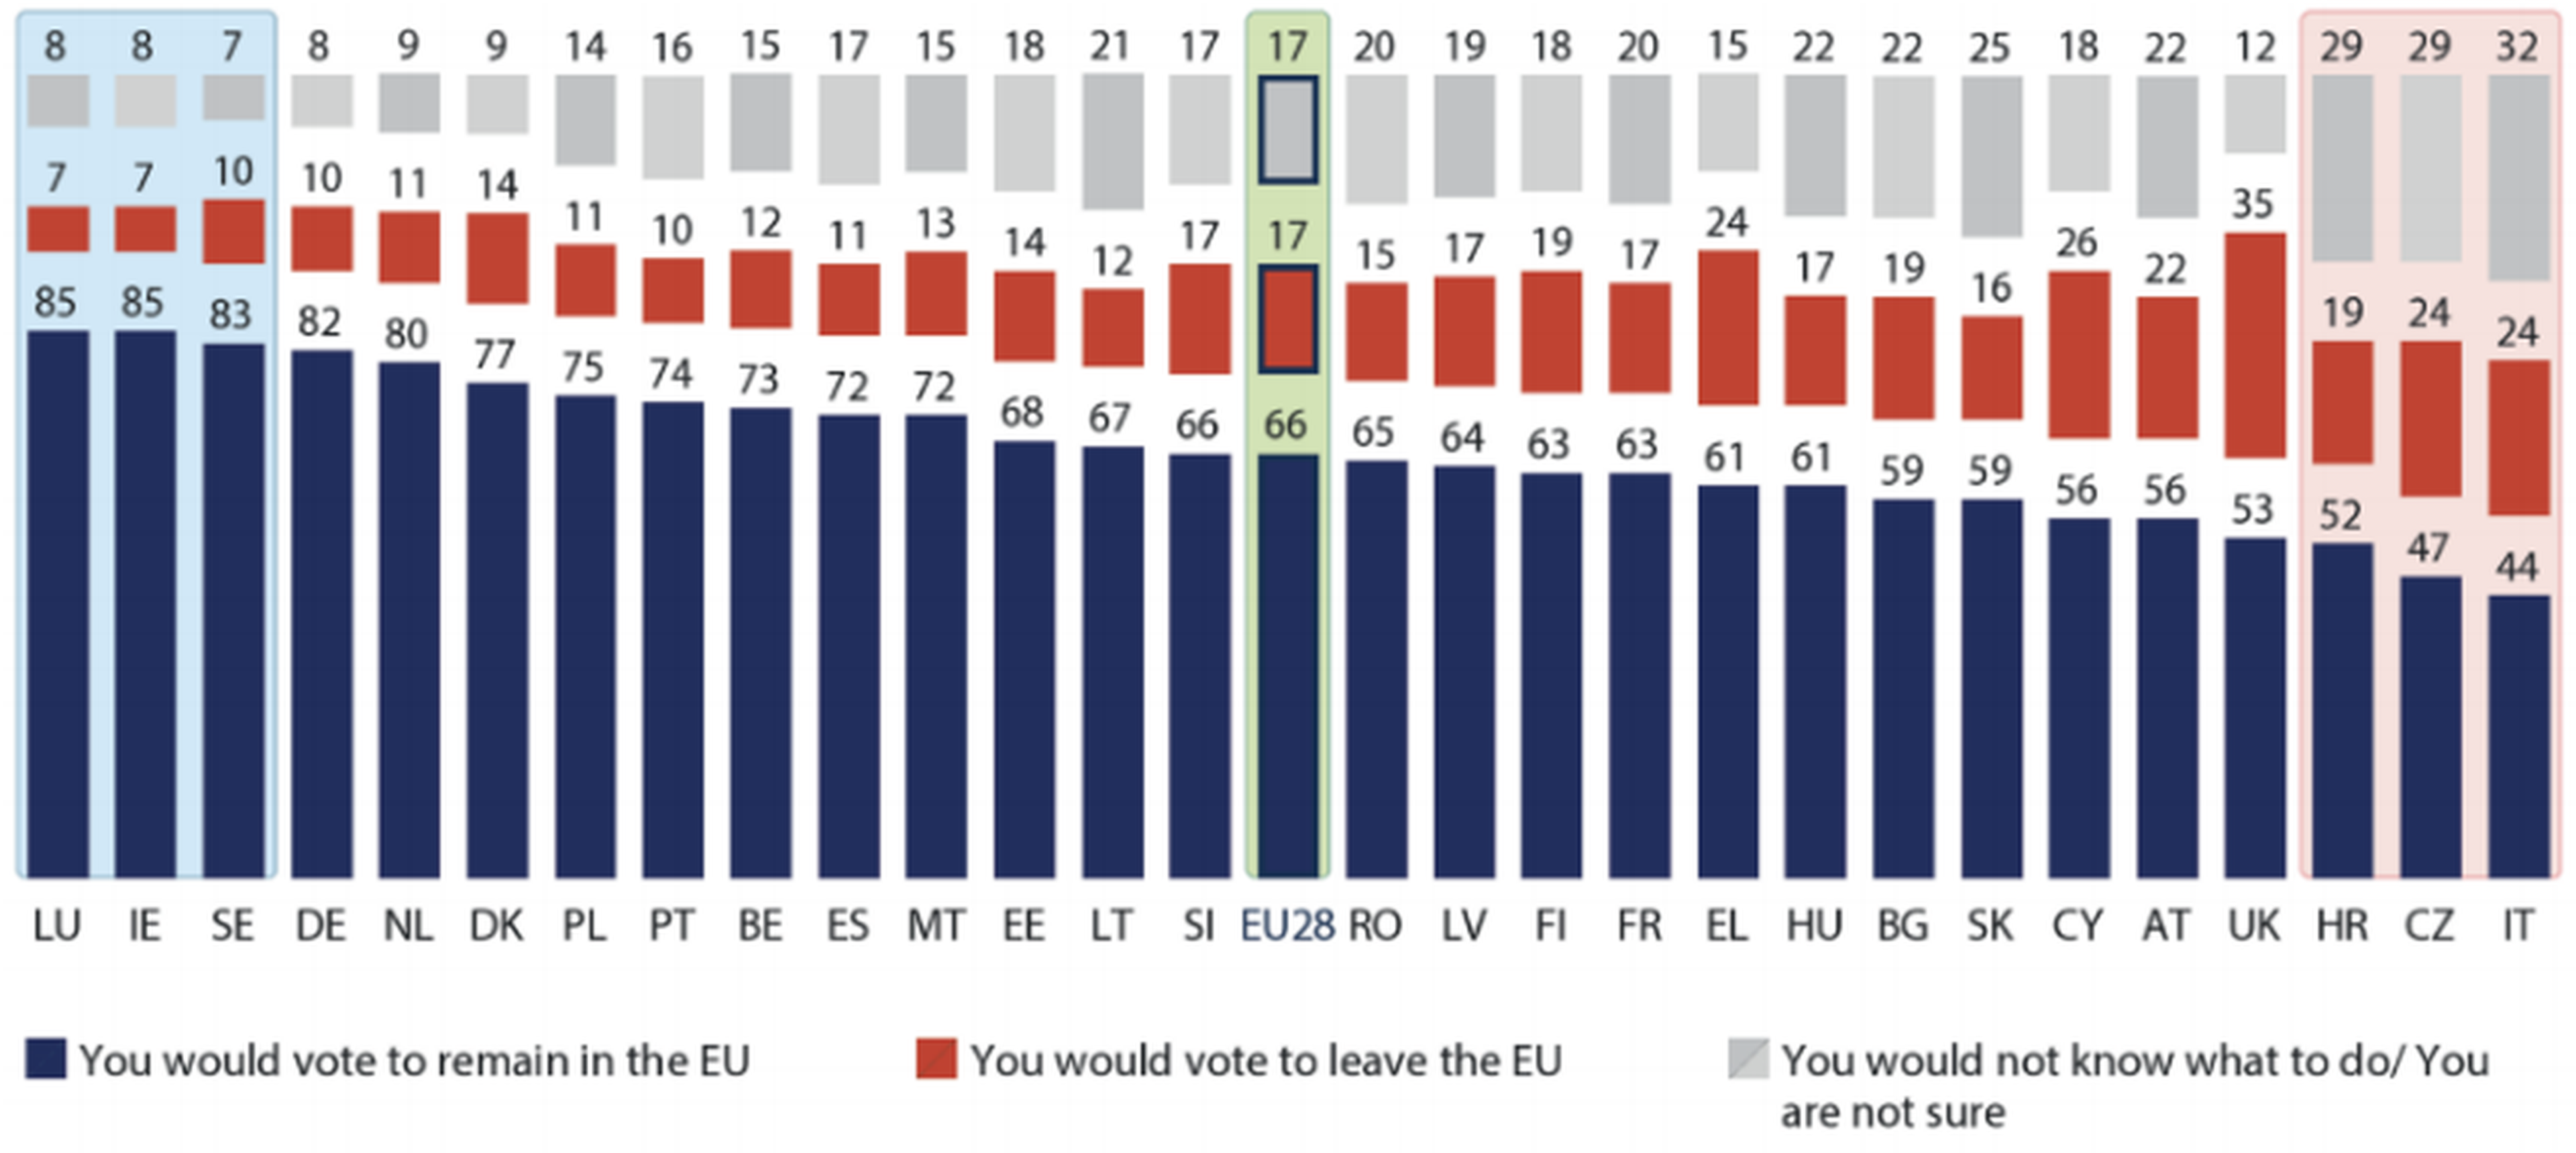 El último Eurobarómetro muestra un retroceso general del euroescepticismo